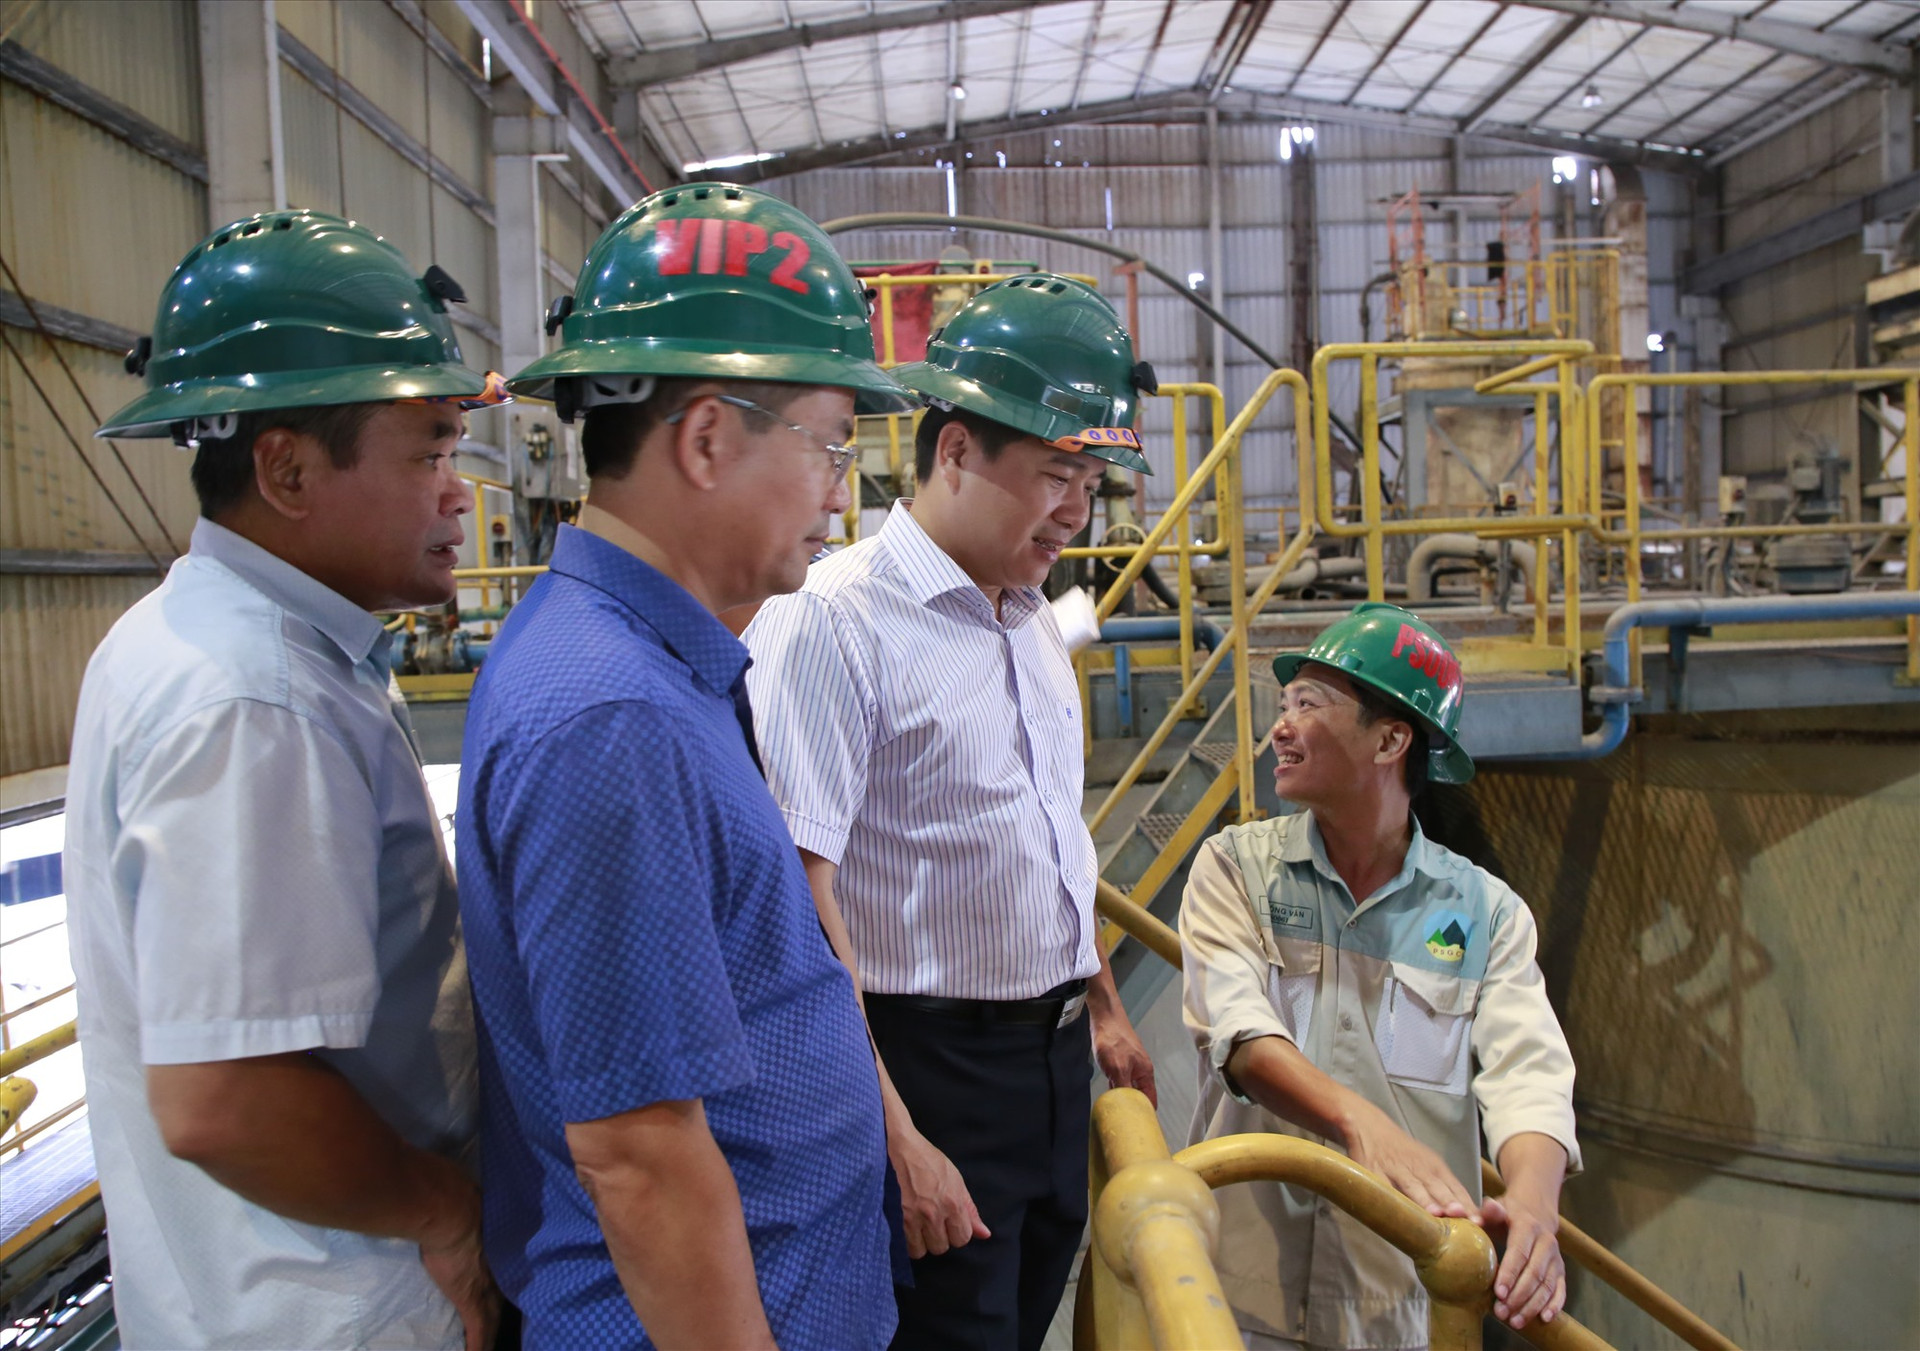 Phó Chủ tịch UBND tỉnh Trần Văn Tân cùng lãnh đạo Sở Tài nguyên - môi trường, UBND huyện Phước Sơn kiểm tra nhà máy Vàng Phước Sơn. Ảnh: T.C